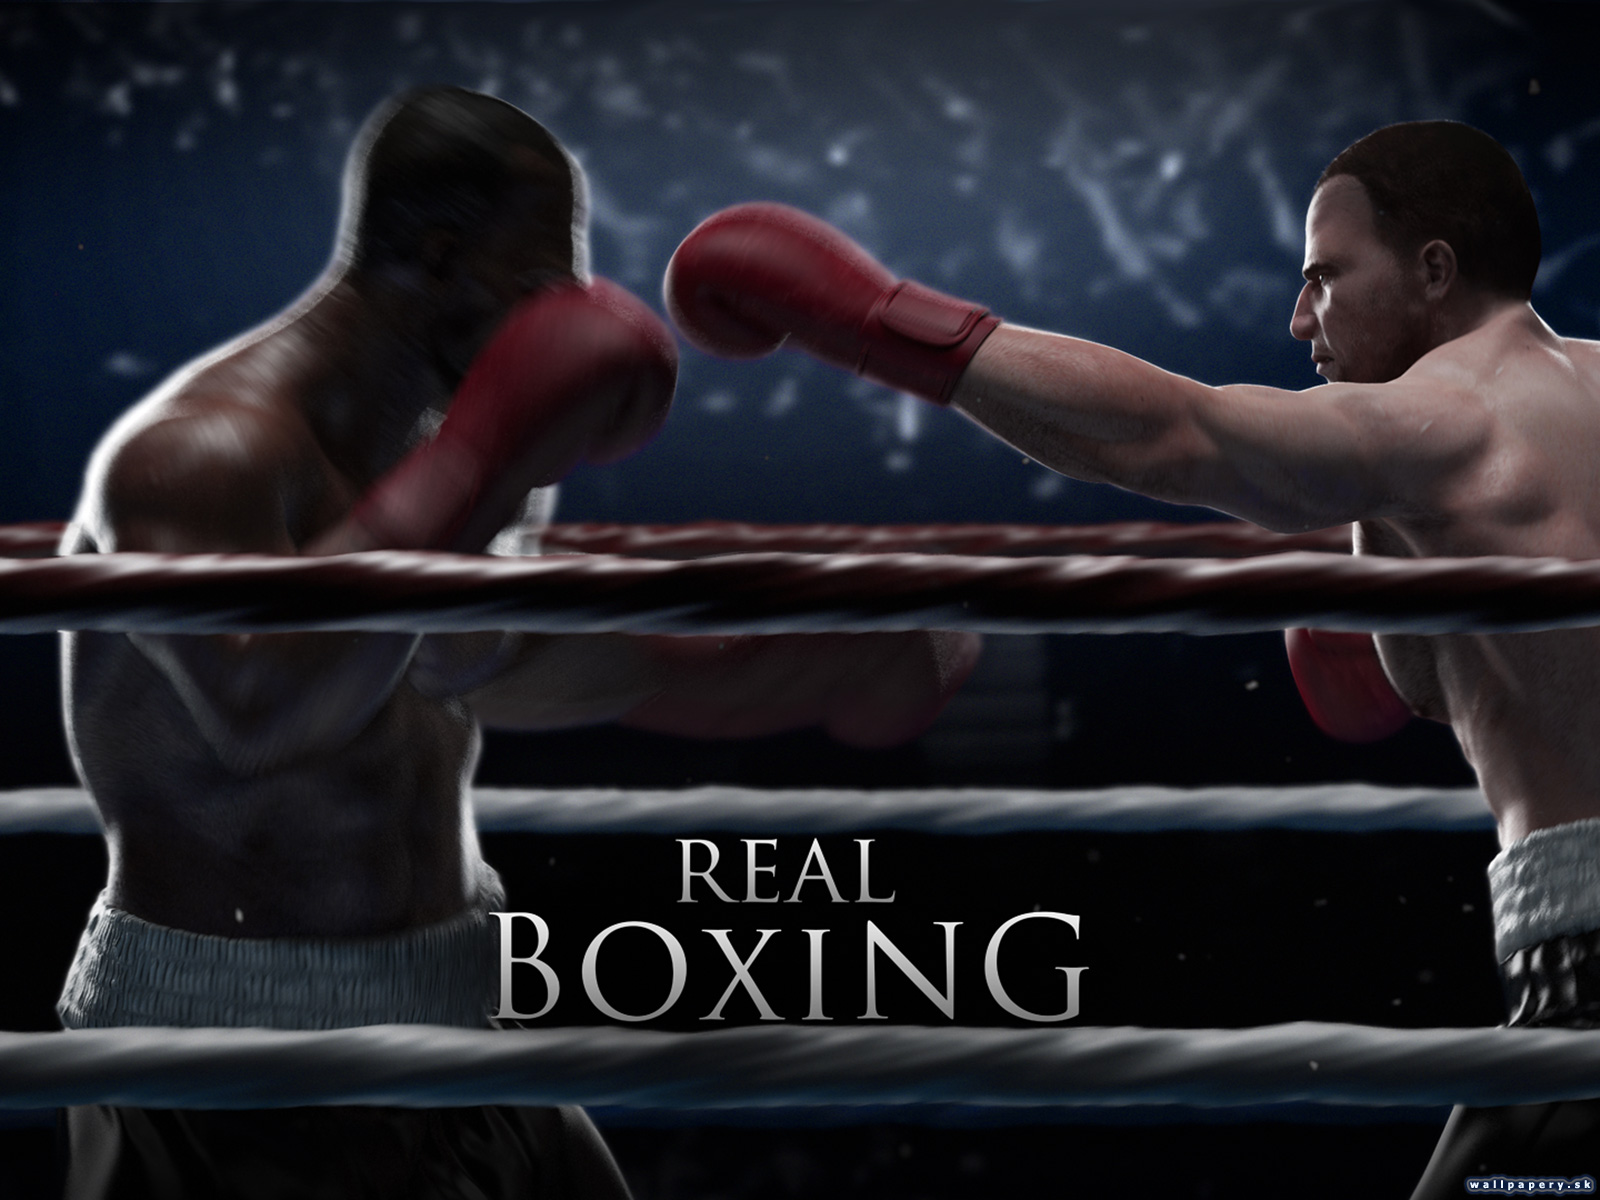 Real Boxing - wallpaper 5